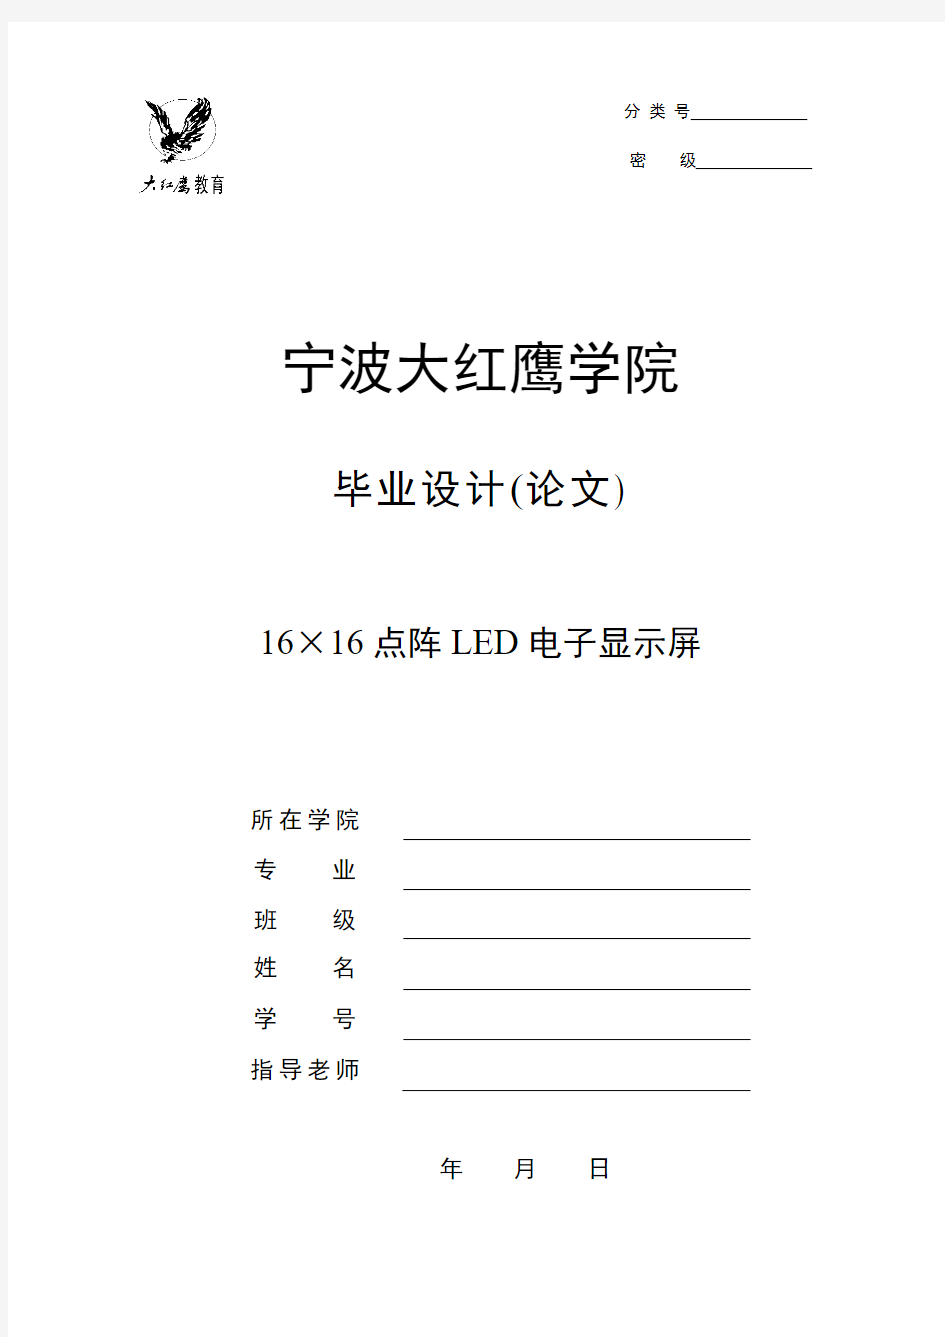 【精品毕设】16×16点阵LED电子显示屏说明书(含全套毕业说明书和机械CAD图纸)